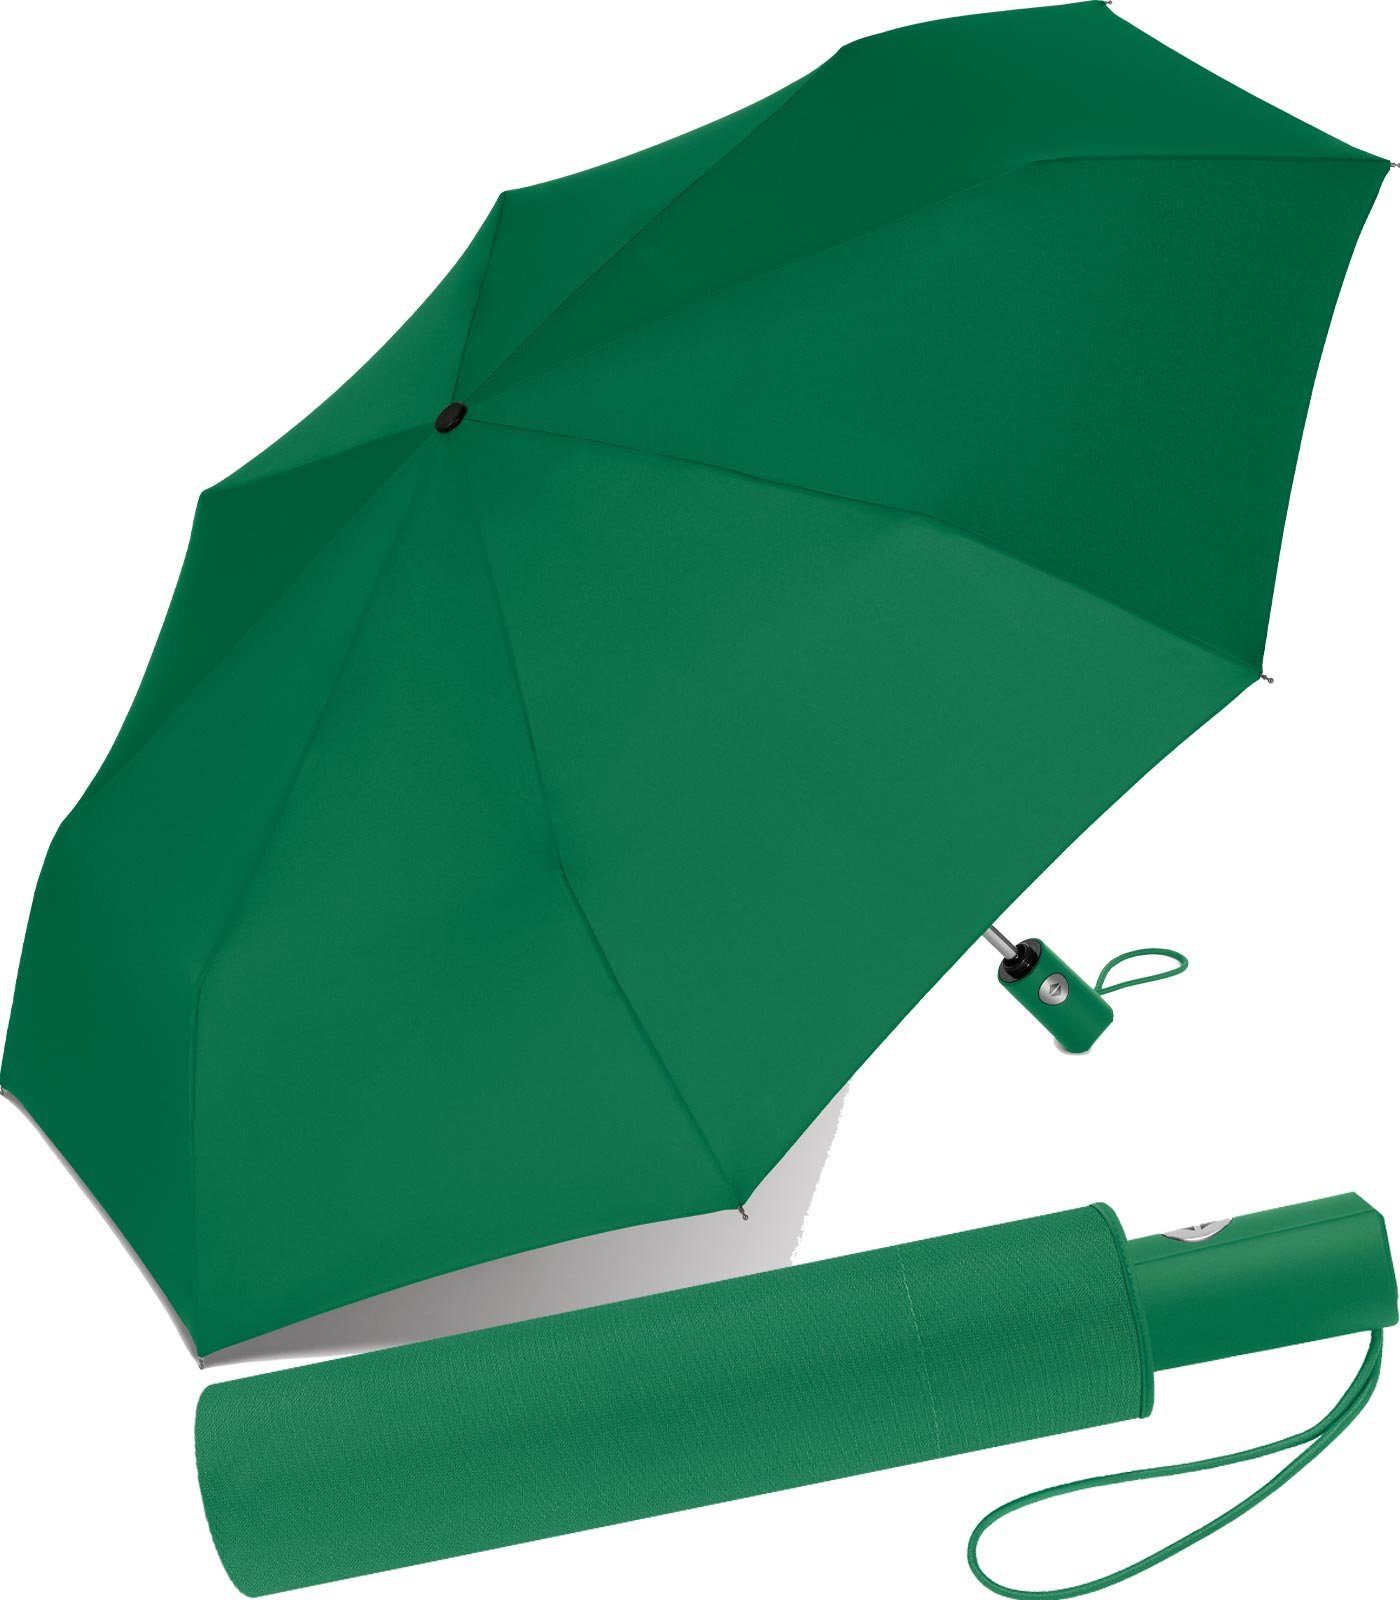 RS-Versand Taschenregenschirm schöner stabiler Regenschirm mit Auf-Zu-Automatik, für Damen und Herren, in vielen modischen Farben grün